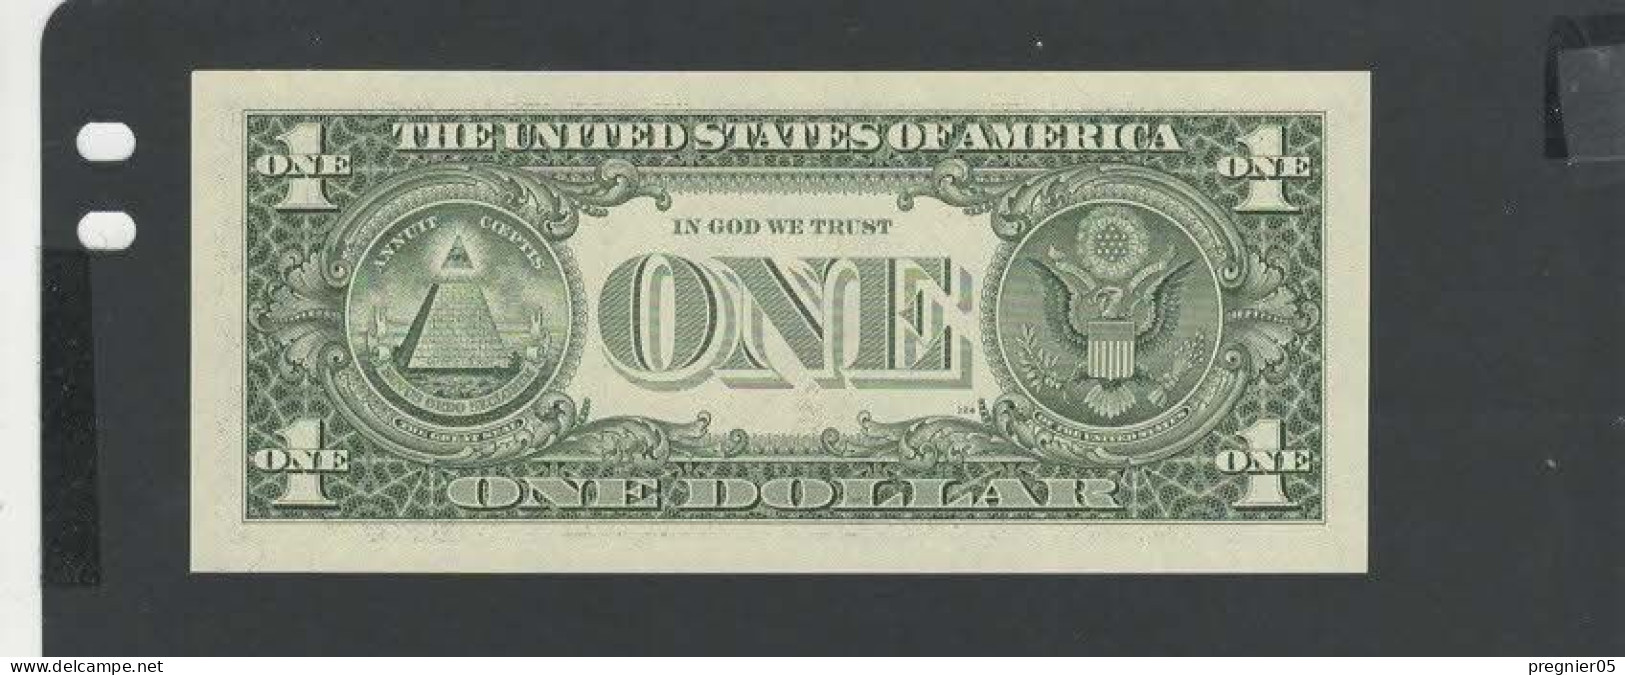 USA - Billet 1 Dollar 2003 NEUF/UNC P.515a § D 781 - Billetes De La Reserva Federal (1928-...)